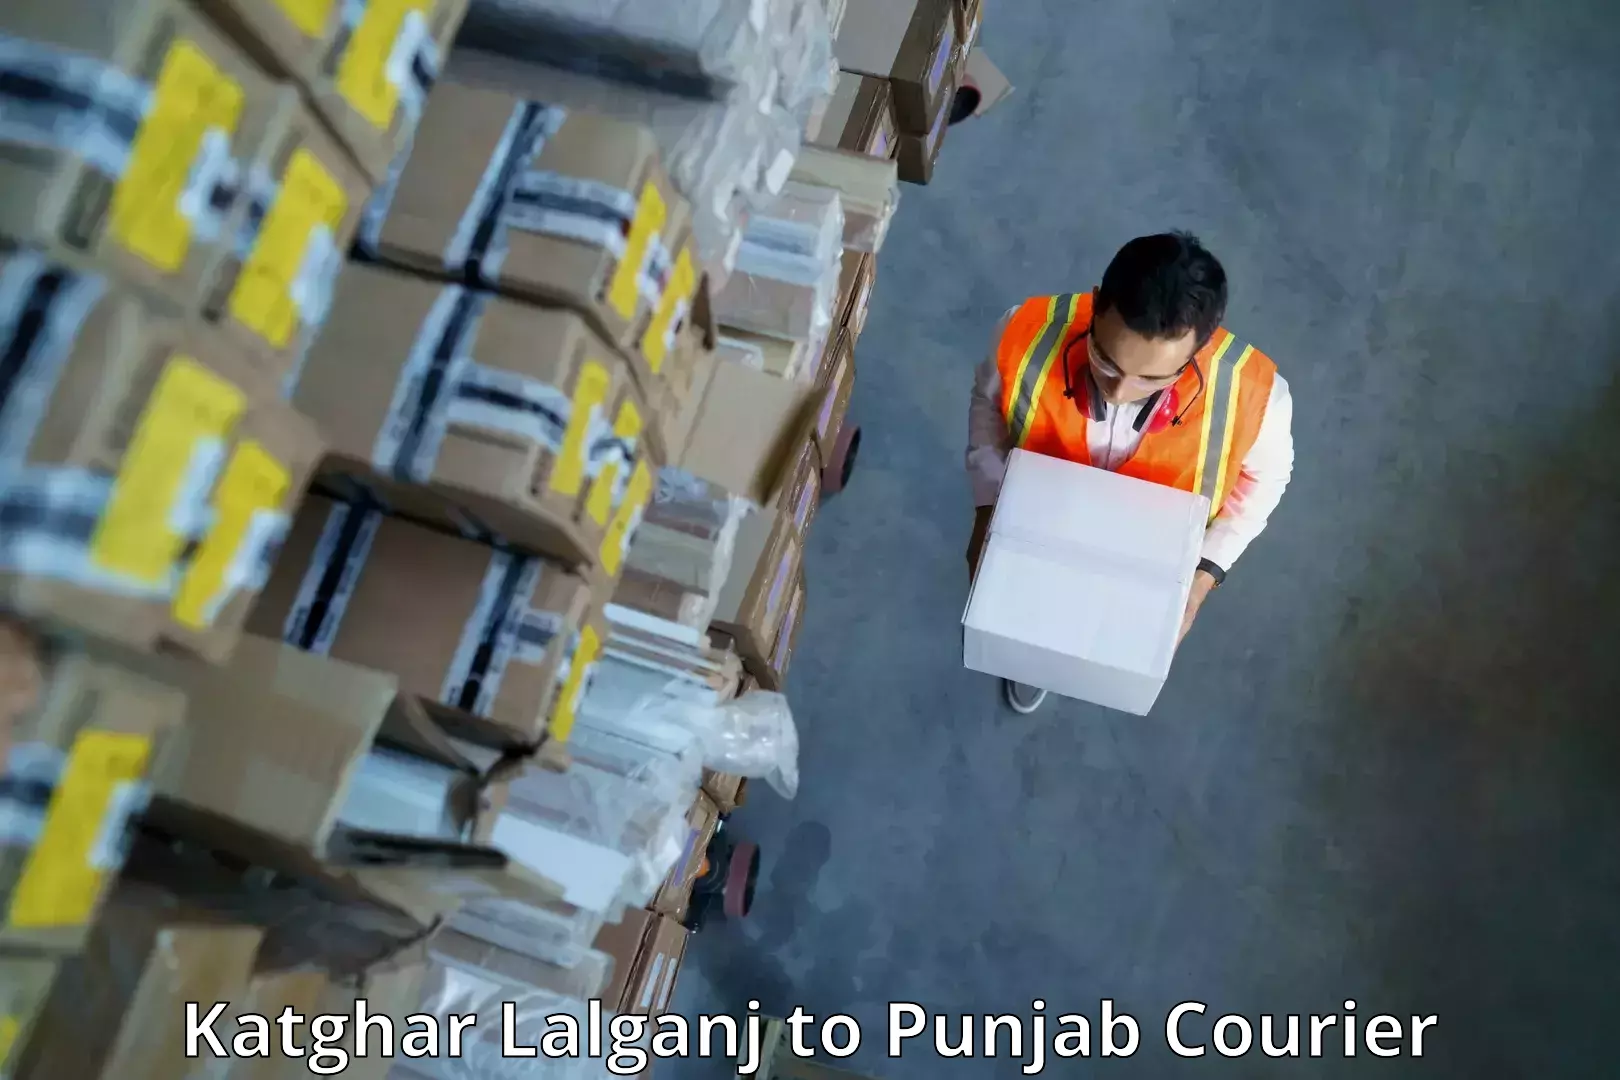 Express shipping Katghar Lalganj to Moga